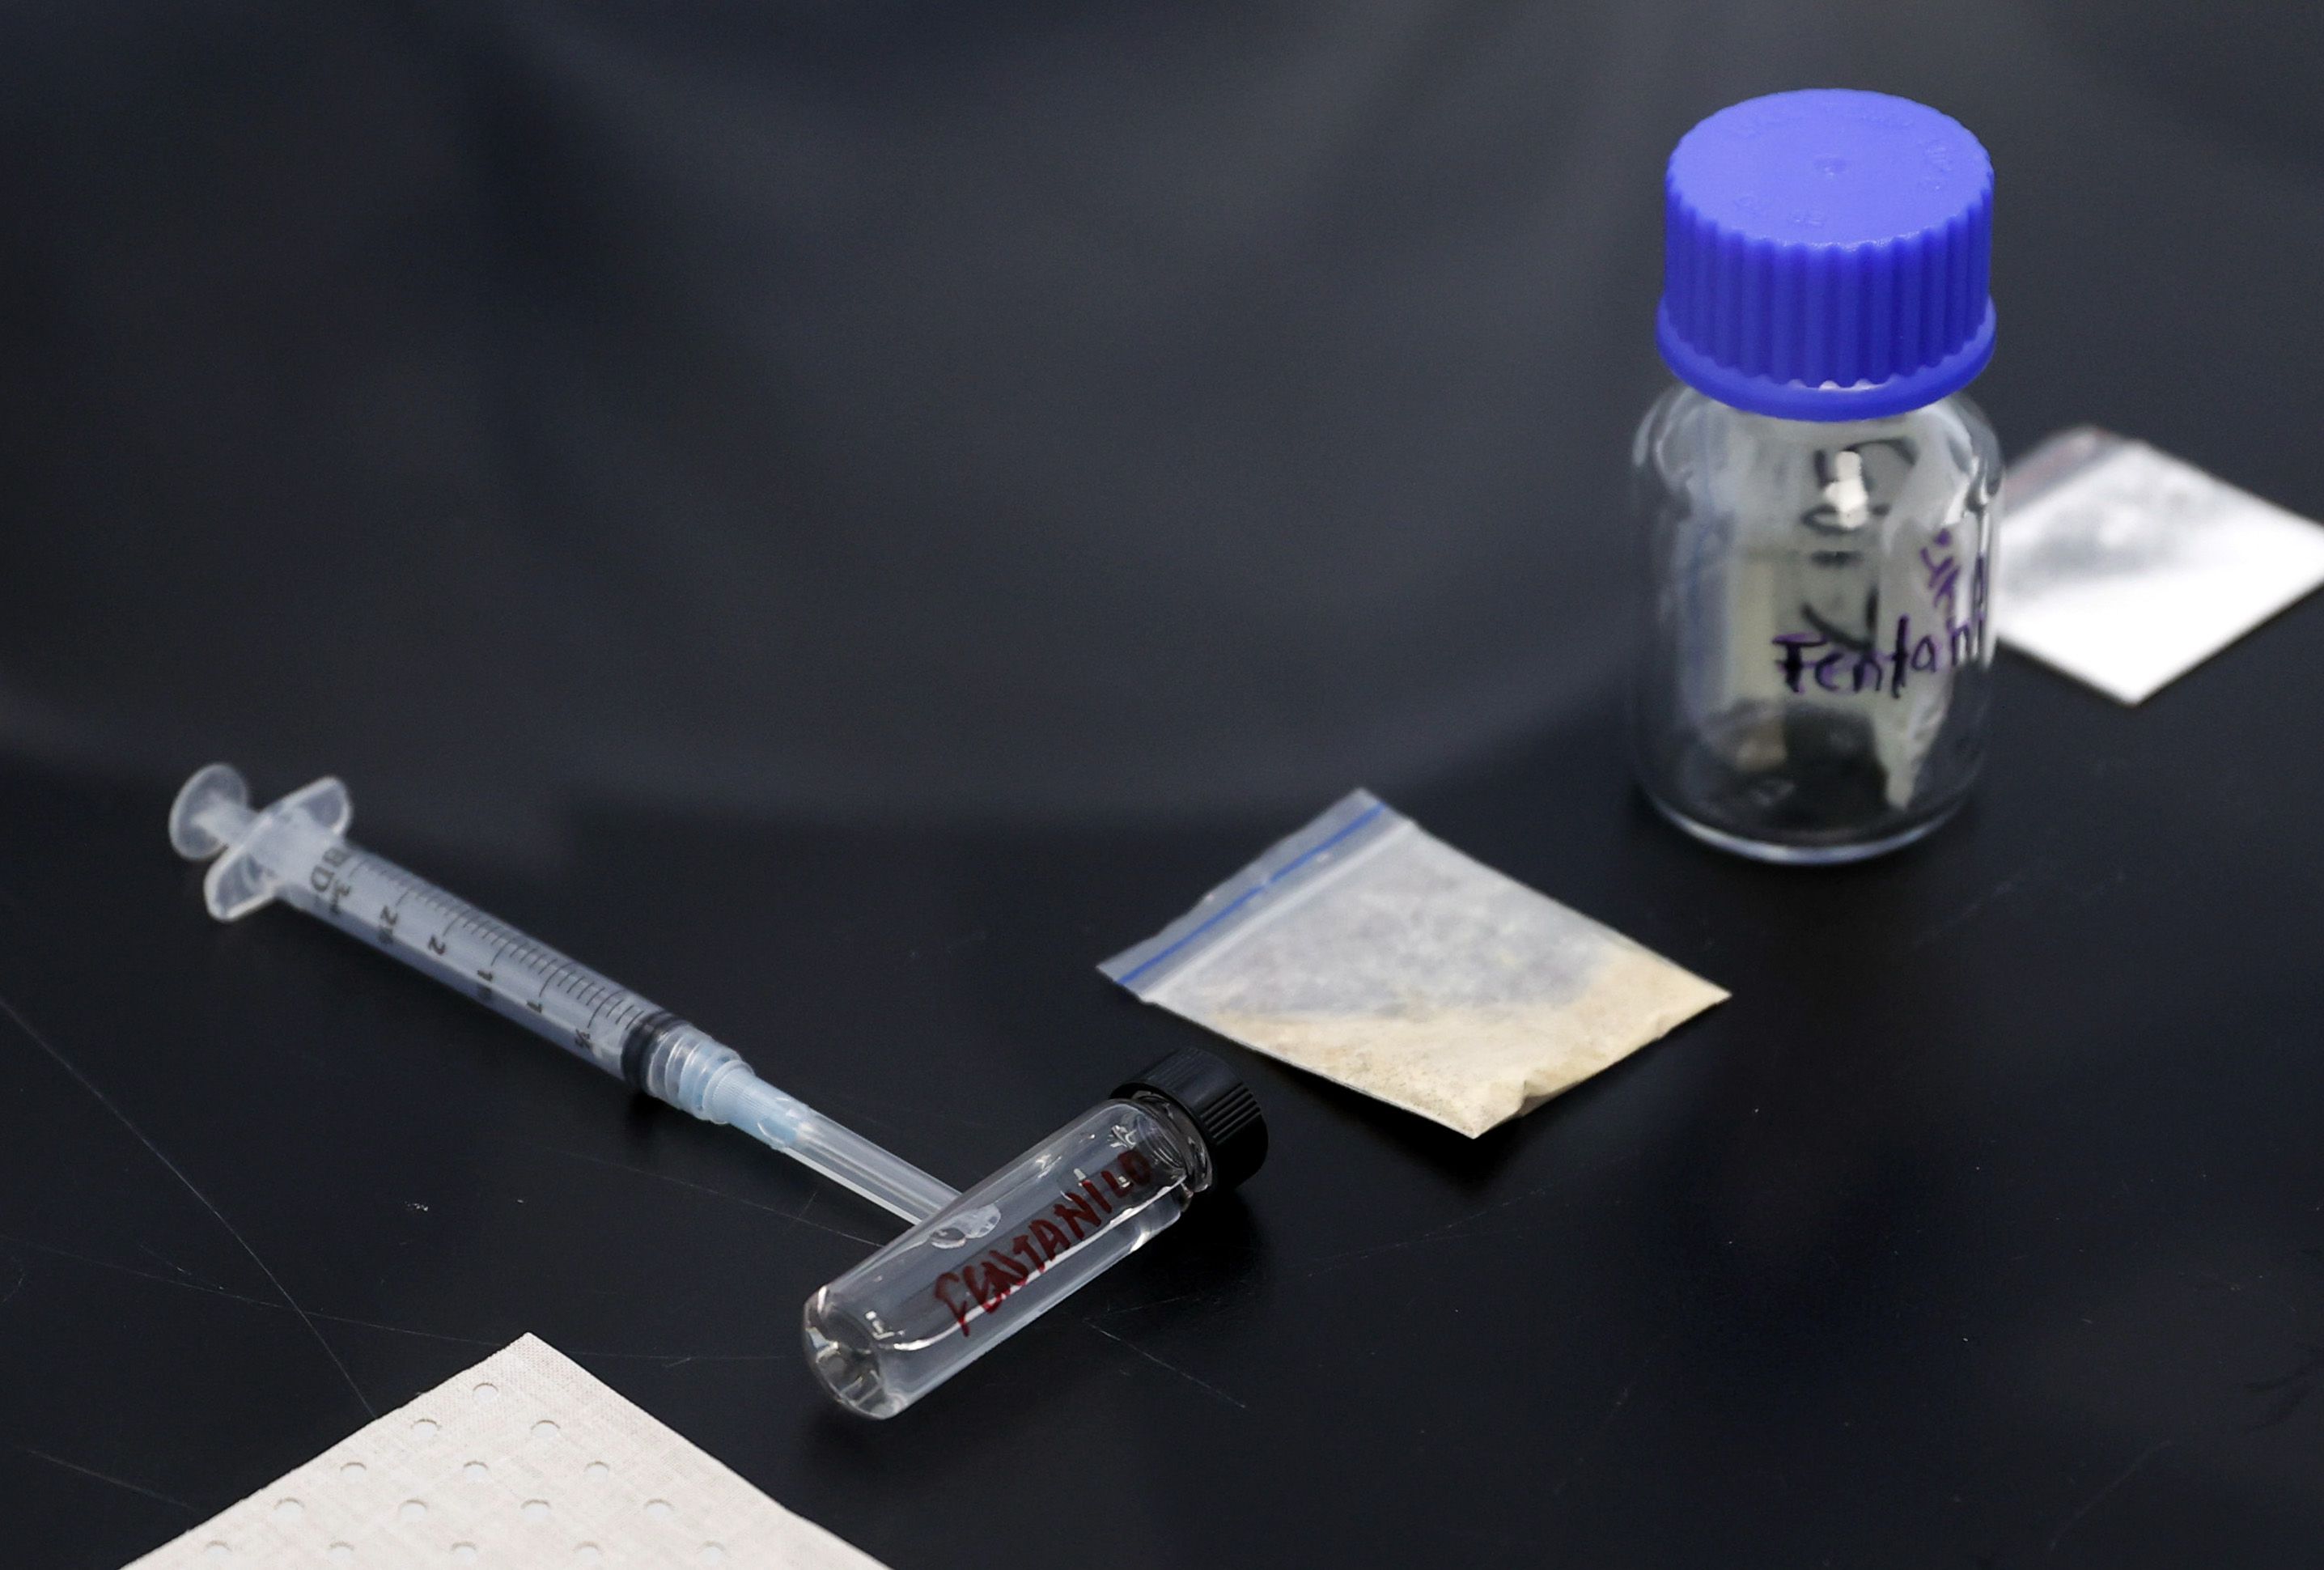 Para rehabilitar la adicción al fentanilo, la persona debería consumir otros opiodes regulados y menos mortales, bajo prescripción médica. (EFE/Mauricio Dueñas Castañeda)
